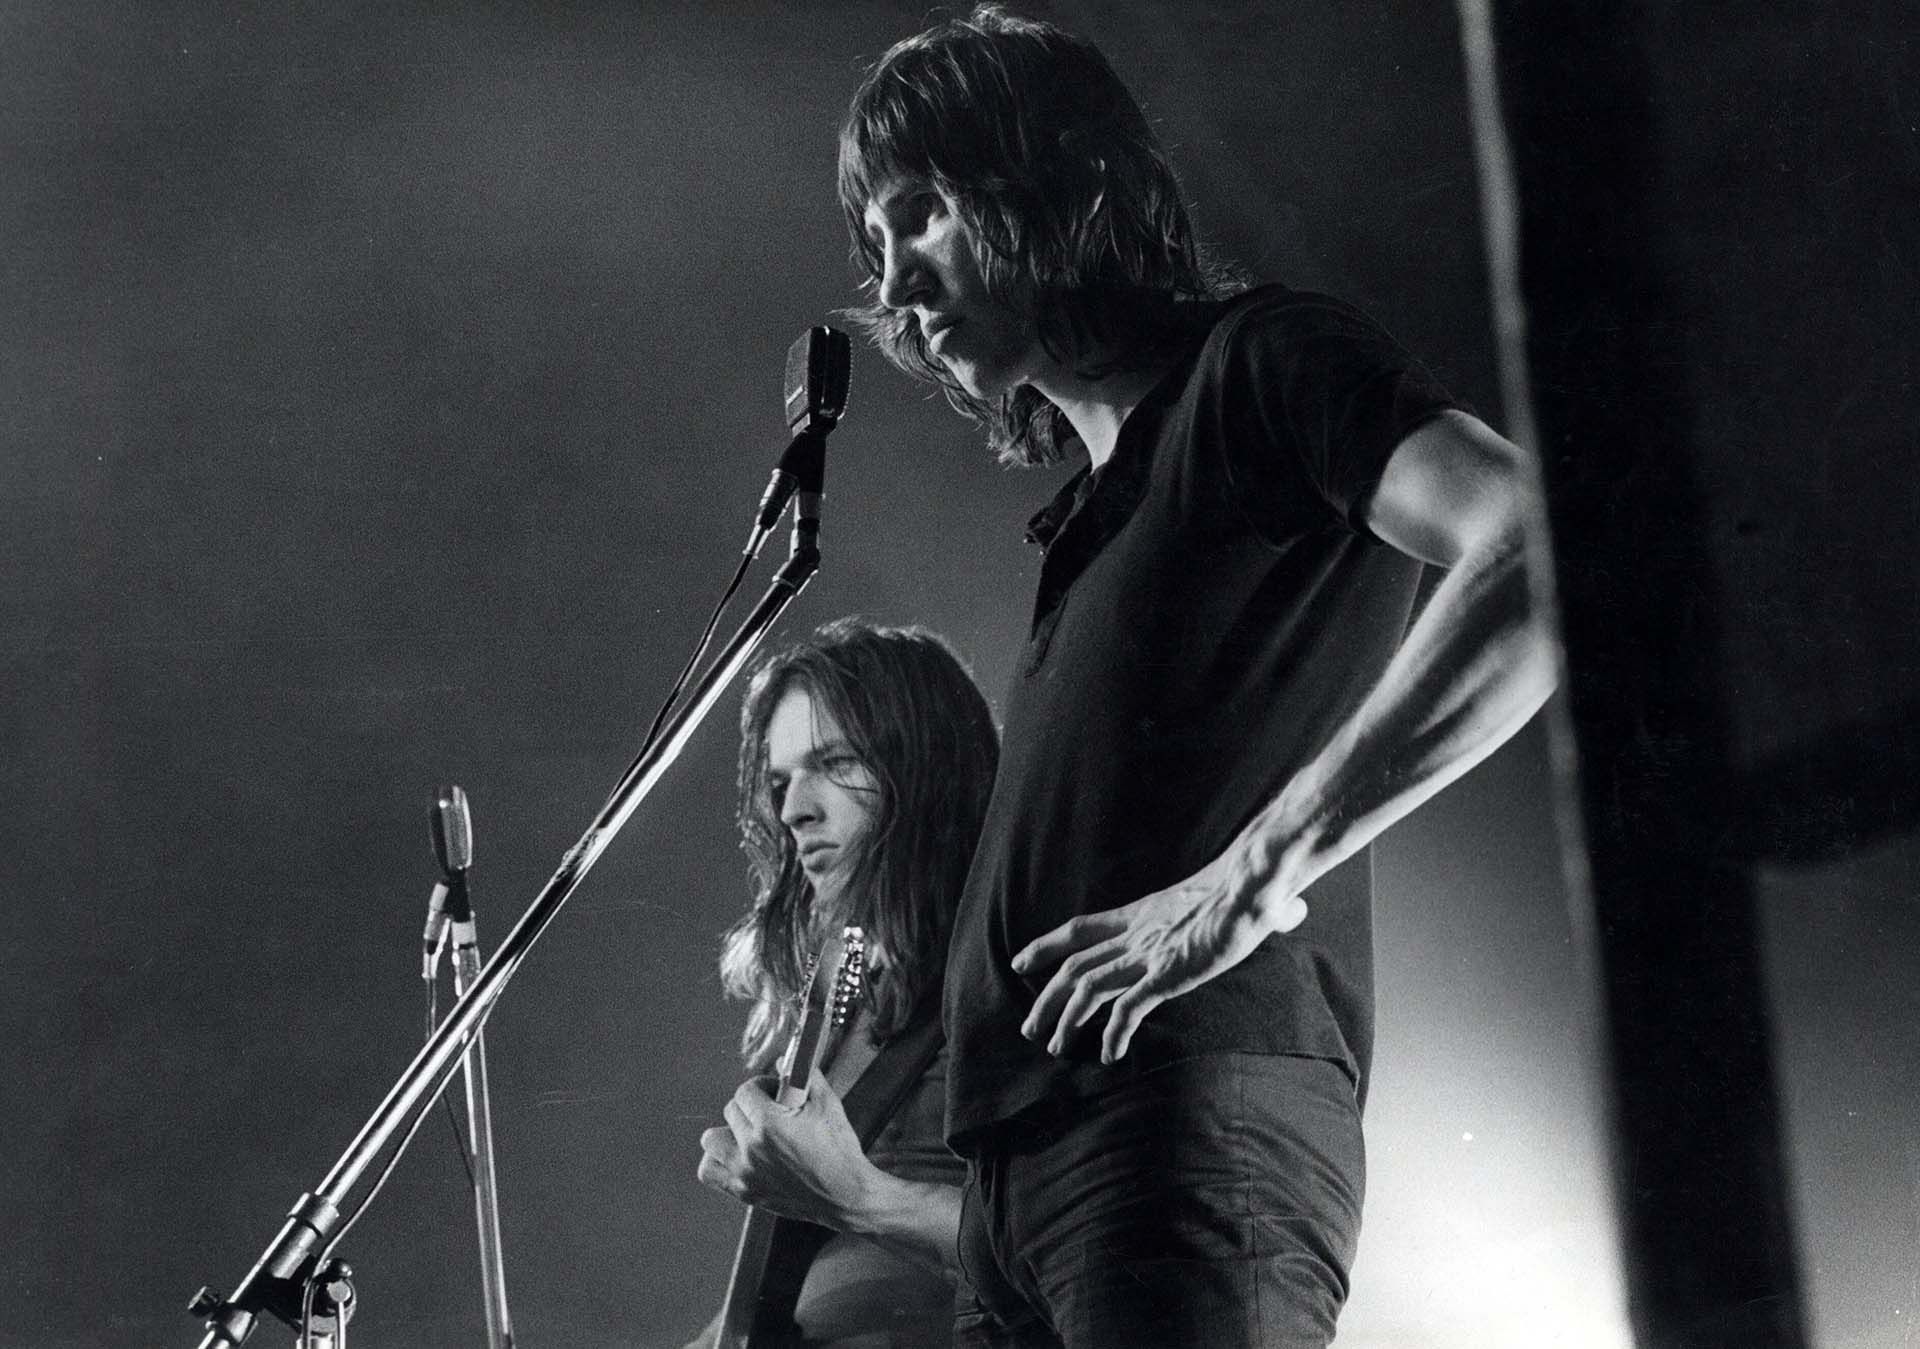 Roger Waters, bajista y voz líder hasta The Final Cut, decidió irse del grupo en 1985 (Crollalanza/Shutterstock)